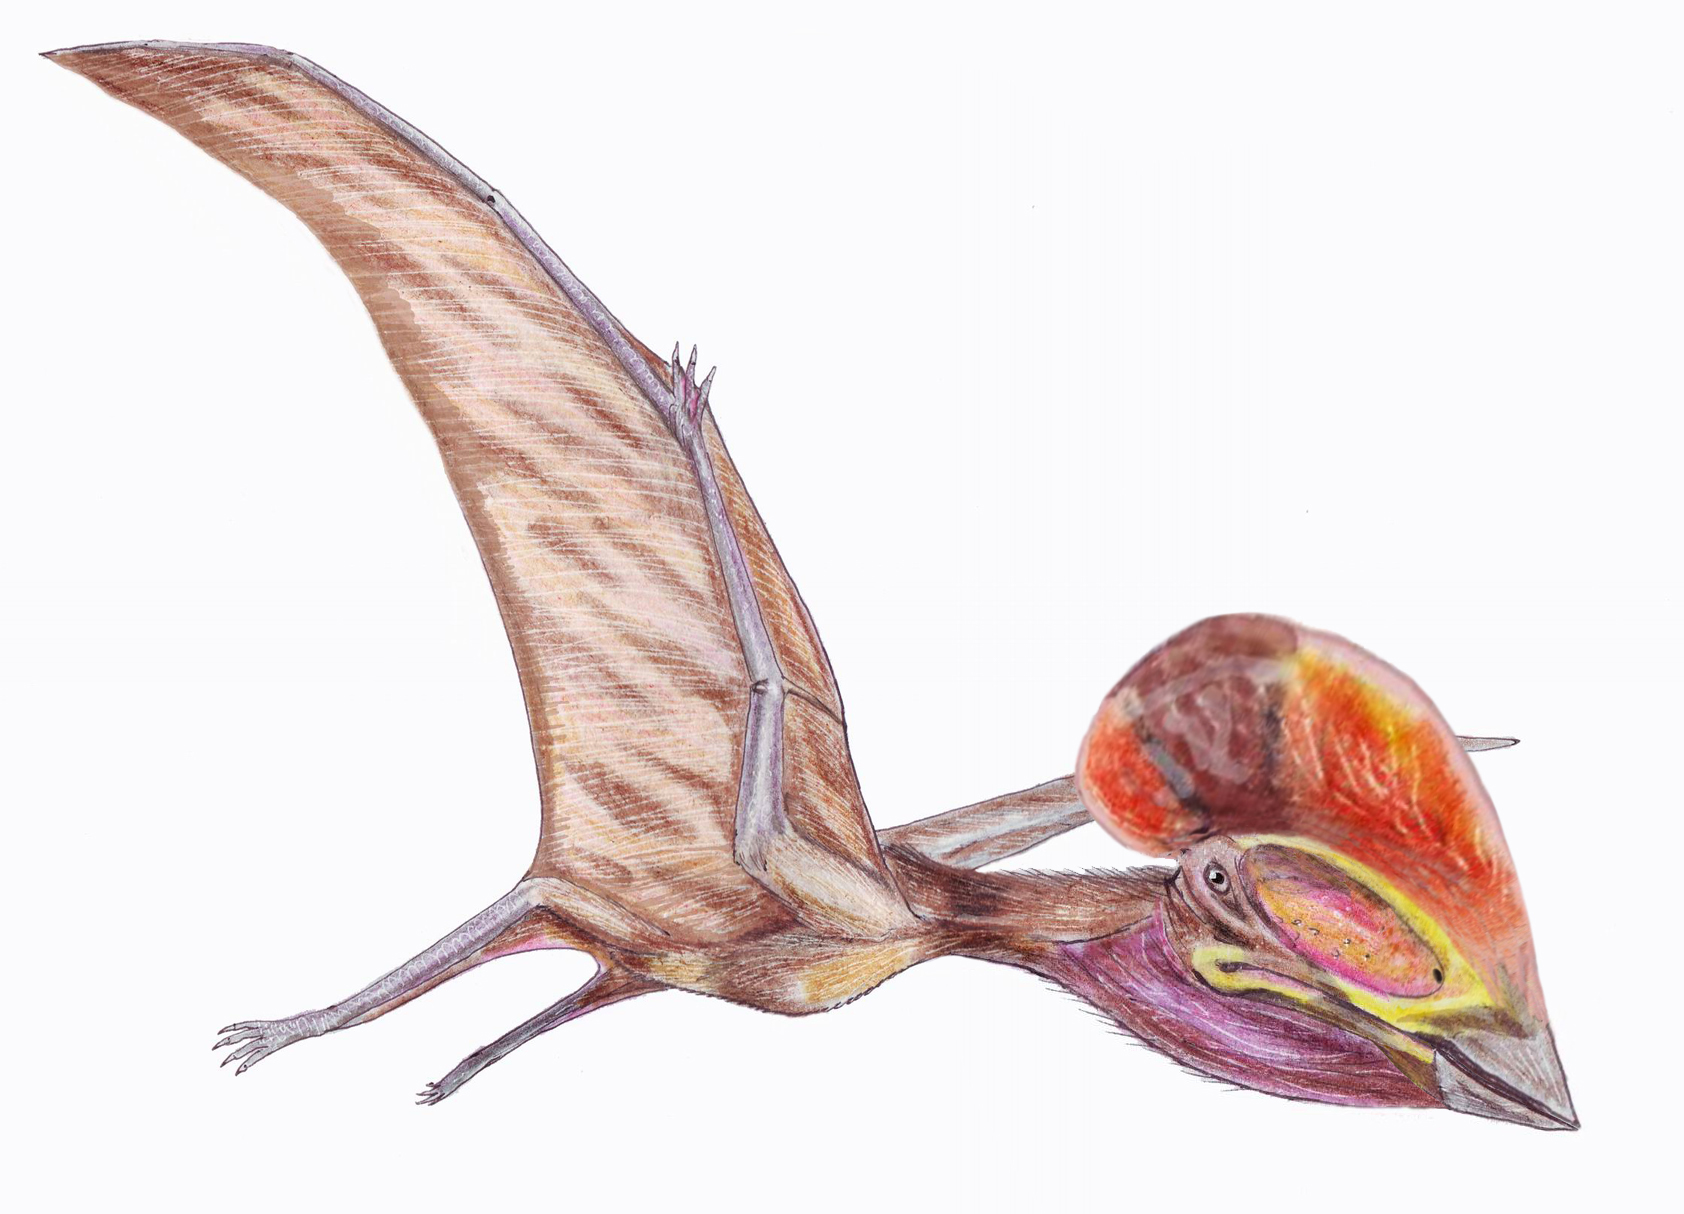 Bakonydraco galaczi byl tapejaridní pterodaktyloid, žijící v období geologického věku santon (asi před 85 miliony let) na území dnešního Maďarska. Jeho fosilie byly popsány roku 2005 a přispěly k lepšímu pochopení biodiverzity ptakoještěrů v období p